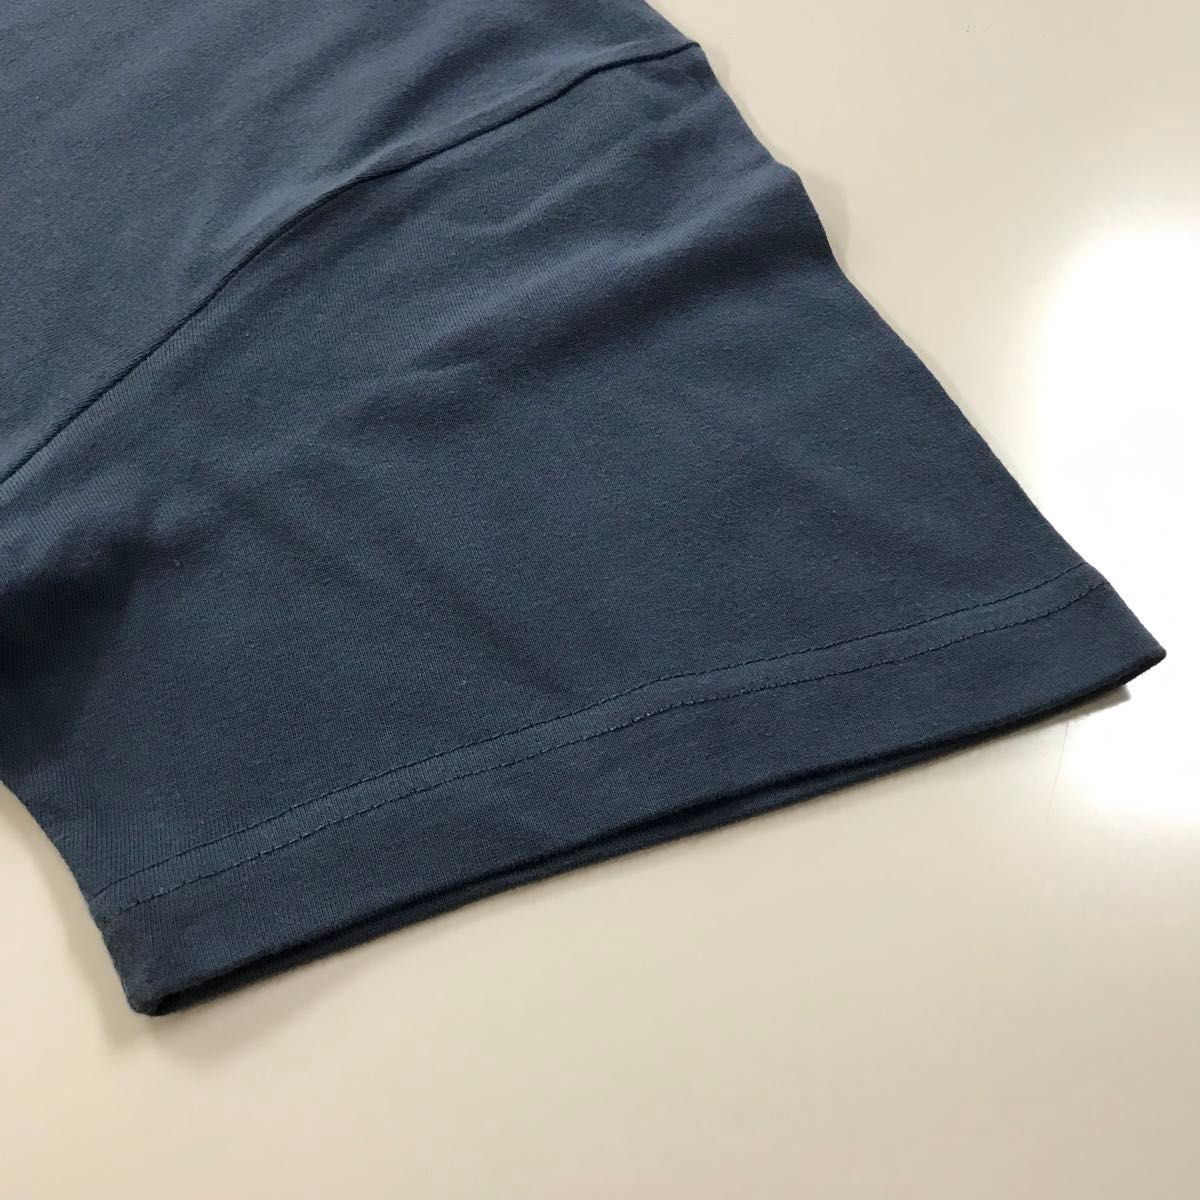 Tシャツ 半袖 5.6オンス ハイクオリティー【5001-01】XL ヘイジーネイビー 綿100%